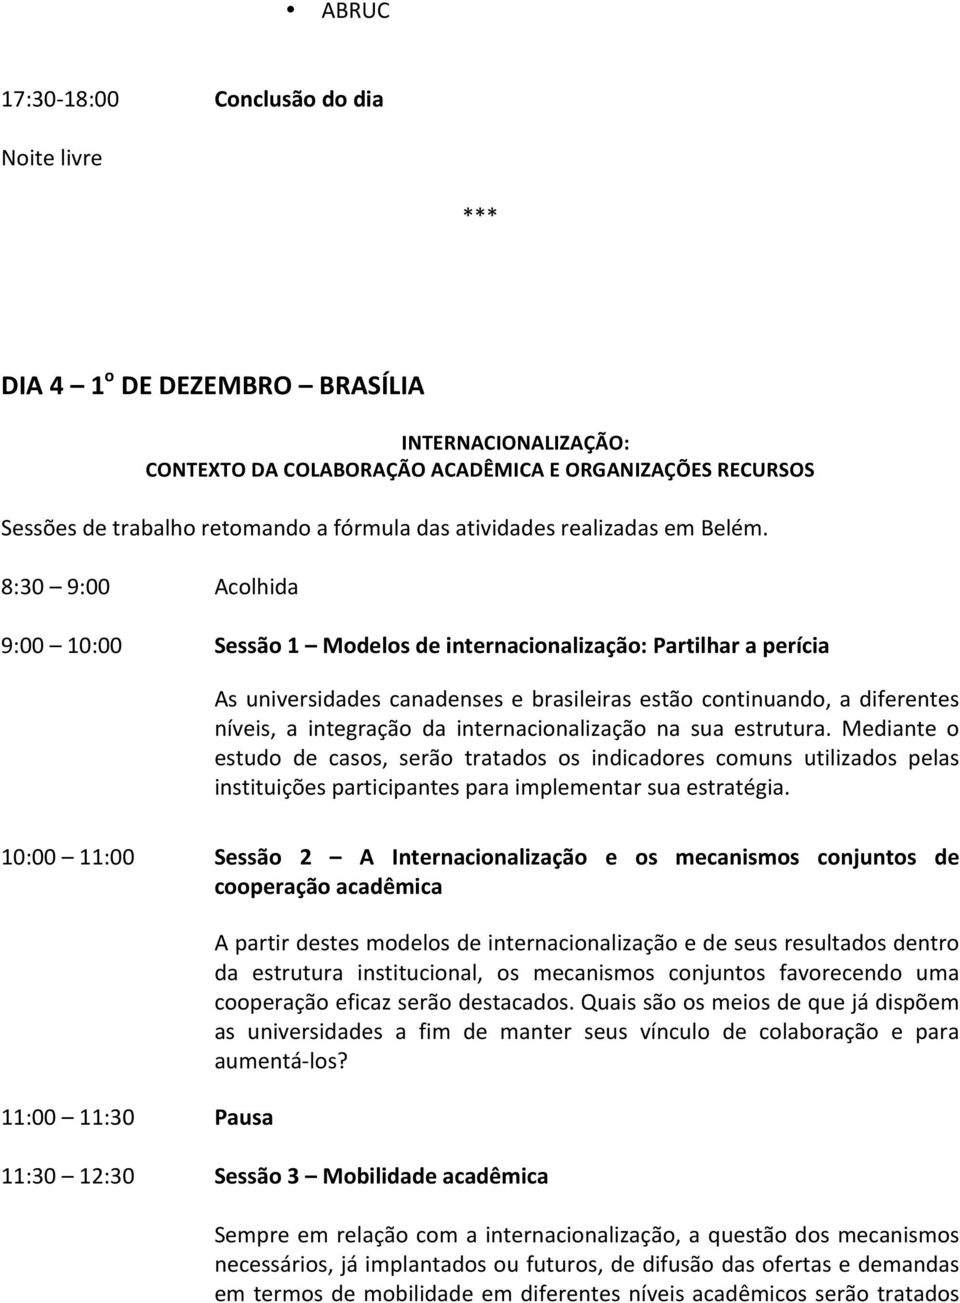 8:30 9:00 Acolhida 9:00 10:00 Sessão 1 Modelos de internacionalização: Partilhar a perícia As universidades canadenses e brasileiras estão continuando, a diferentes níveis, a integração da